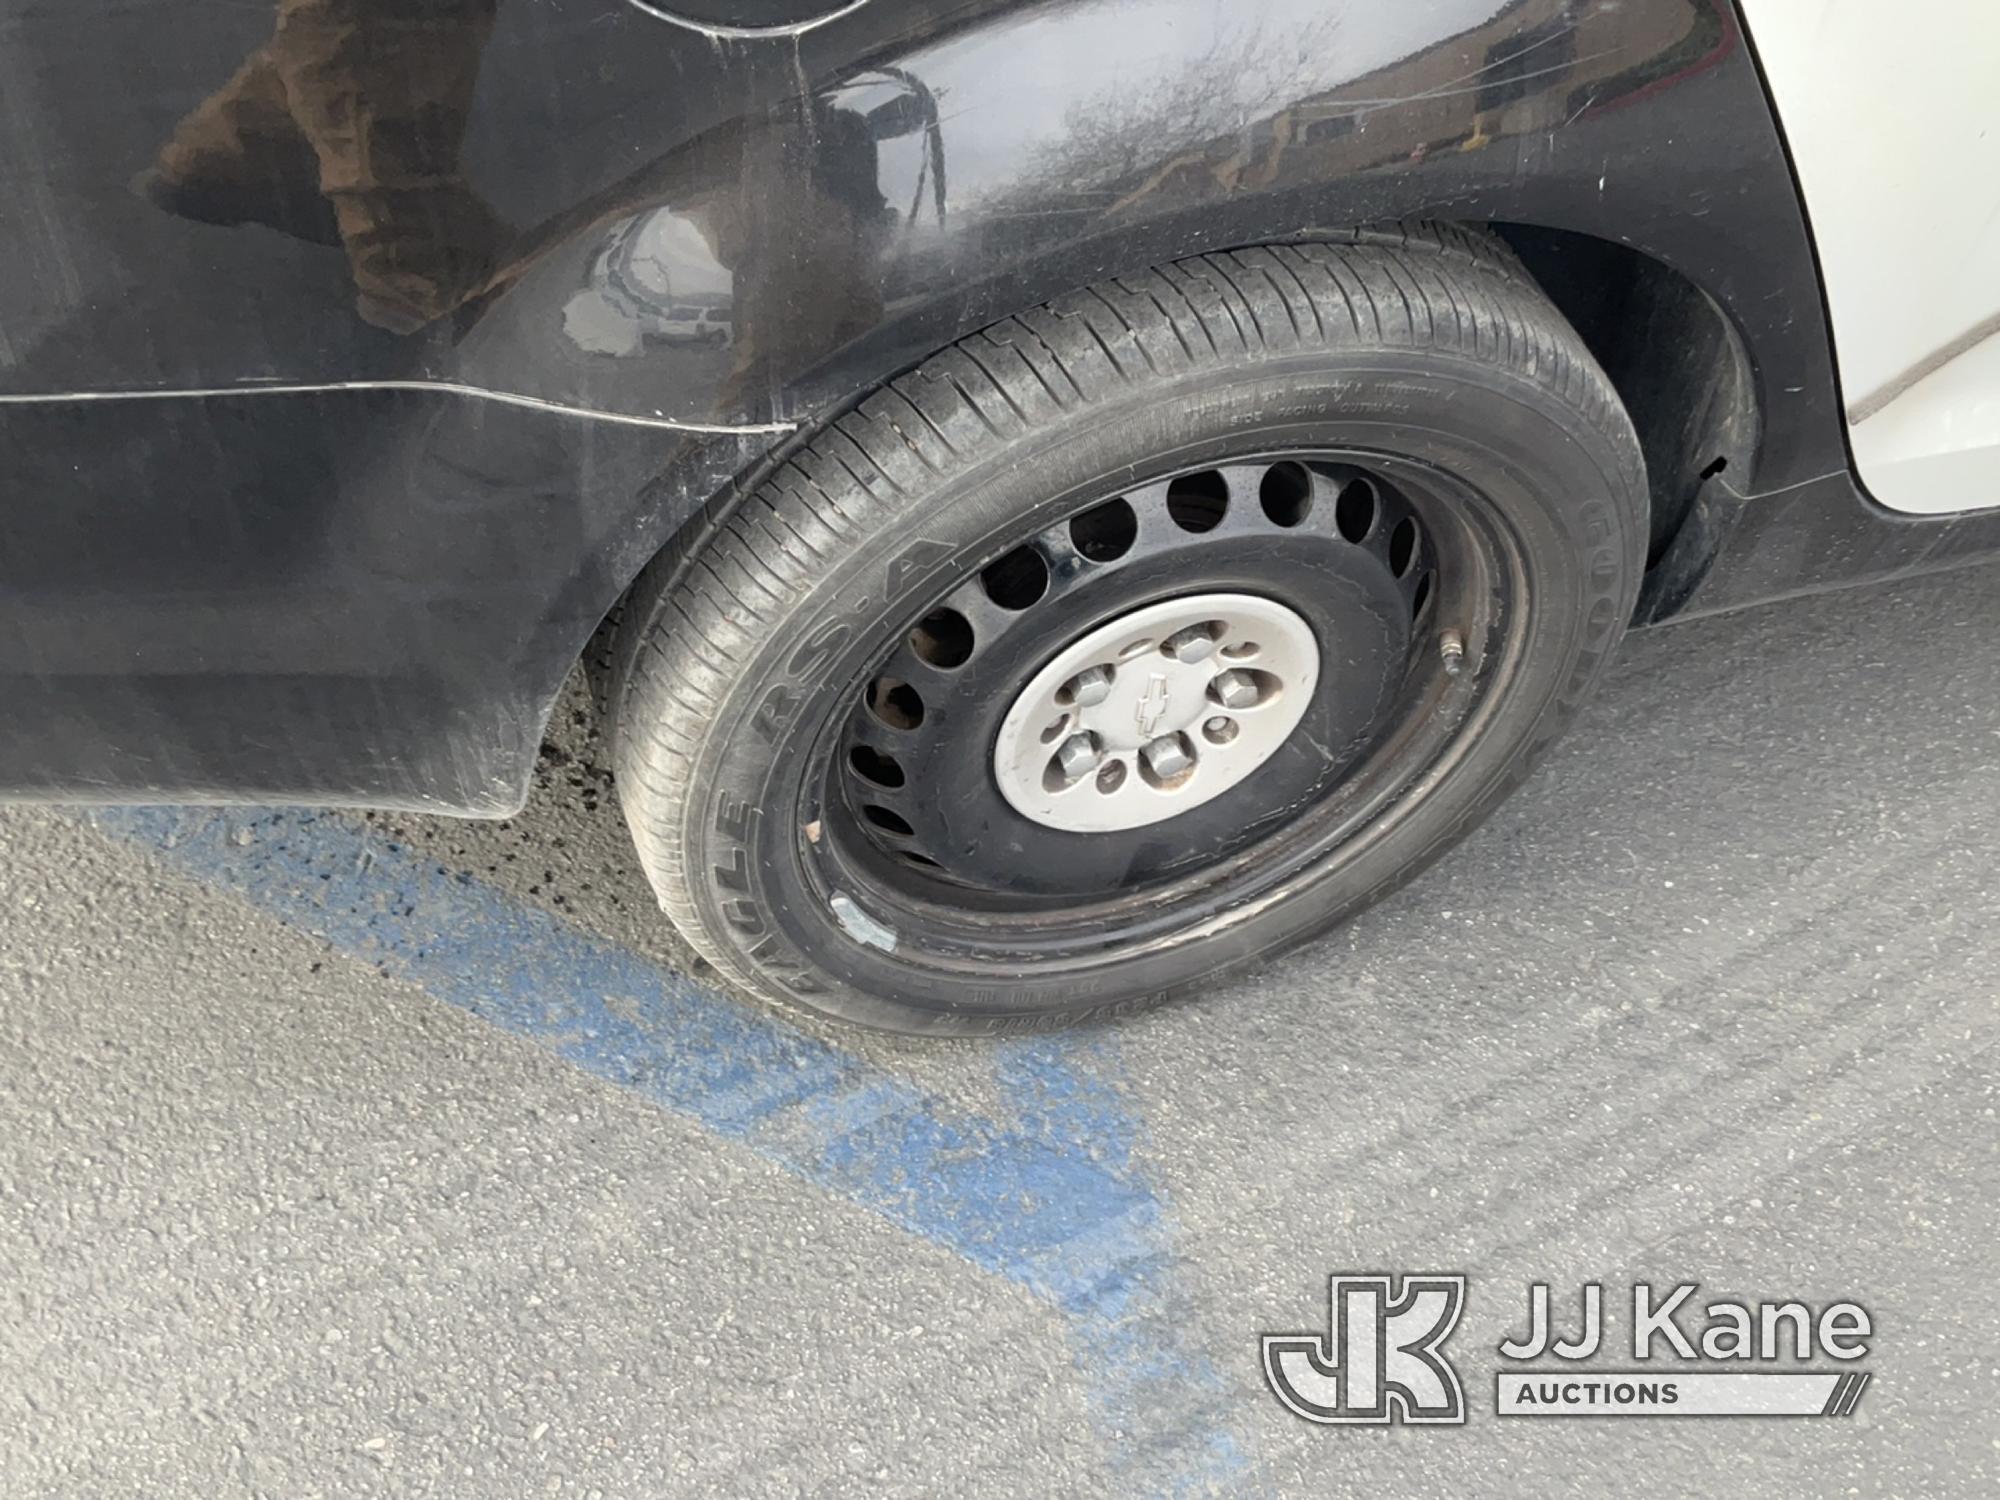 (Jurupa Valley, CA) 2014 Chevrolet Caprice 4-Door Sedan Runs & Moves, Interior Is Stripped Of Parts